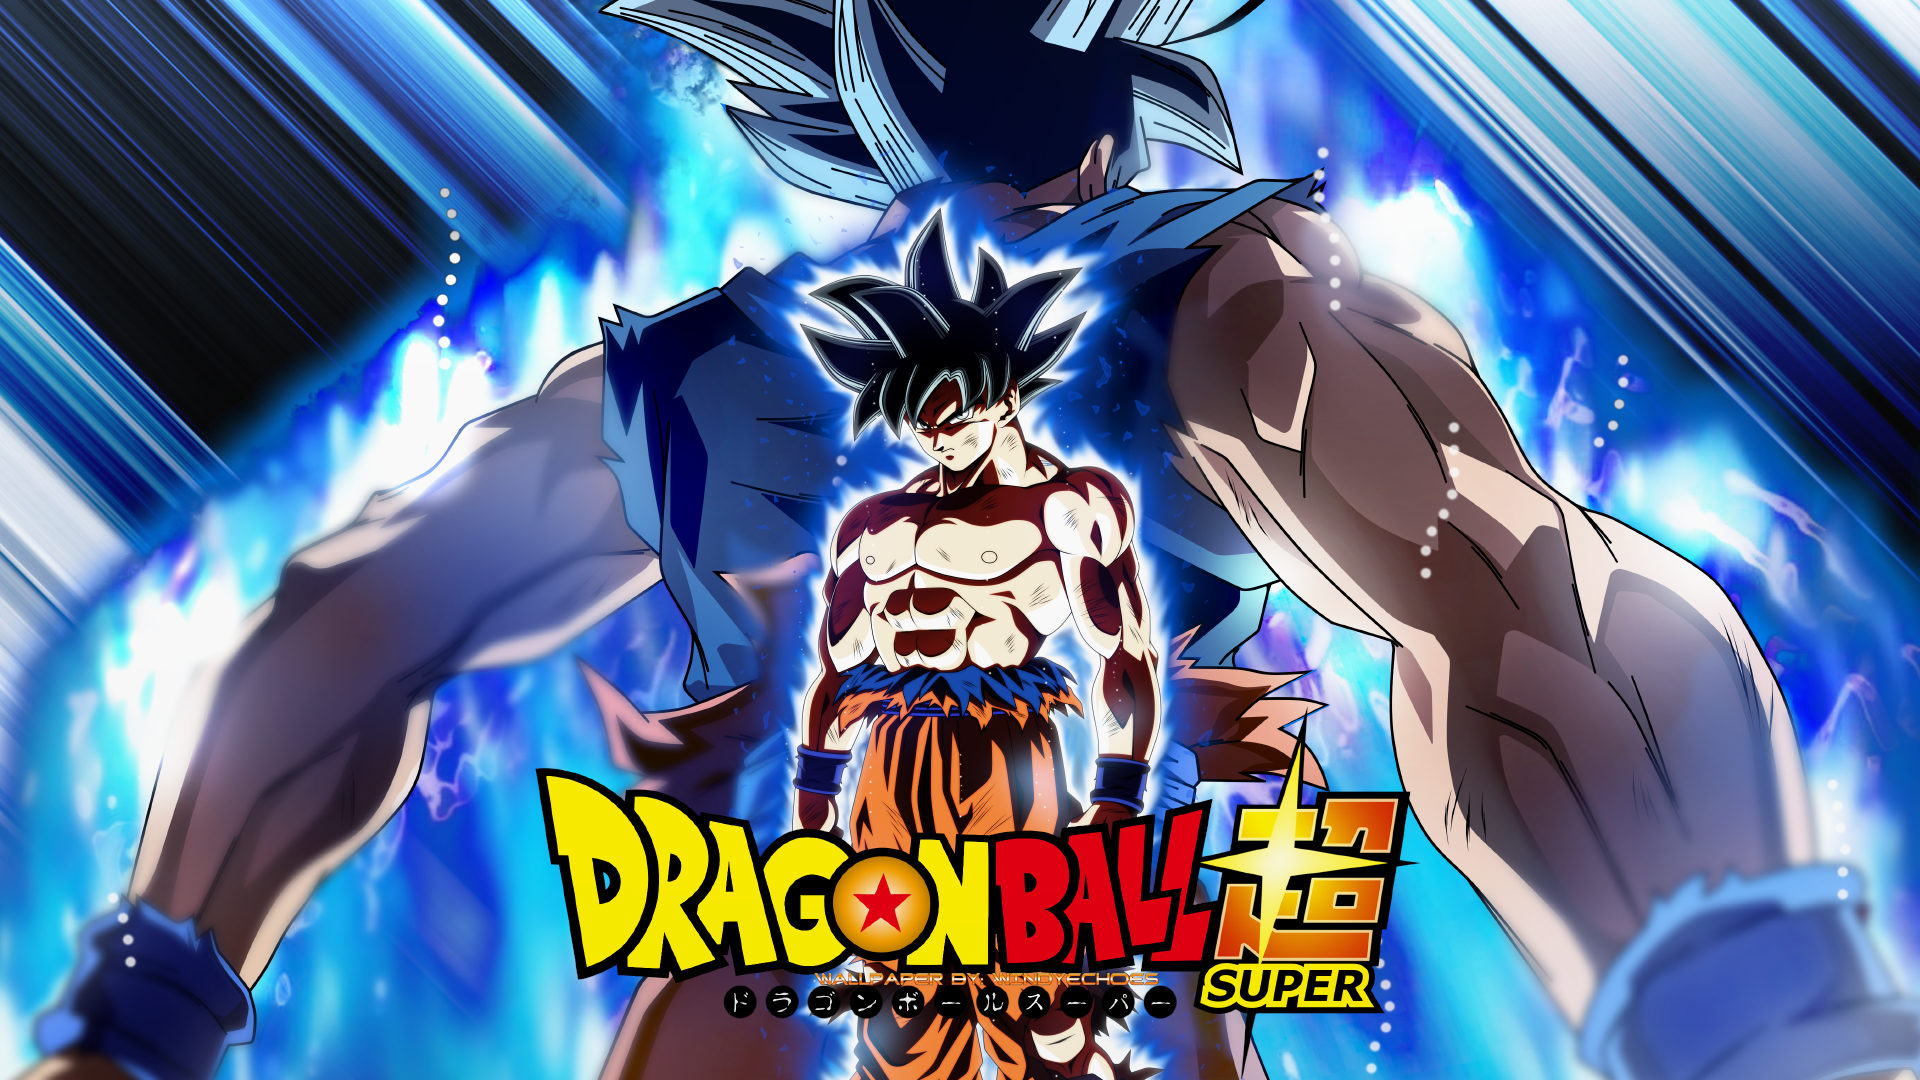 Goku instinto superior 100